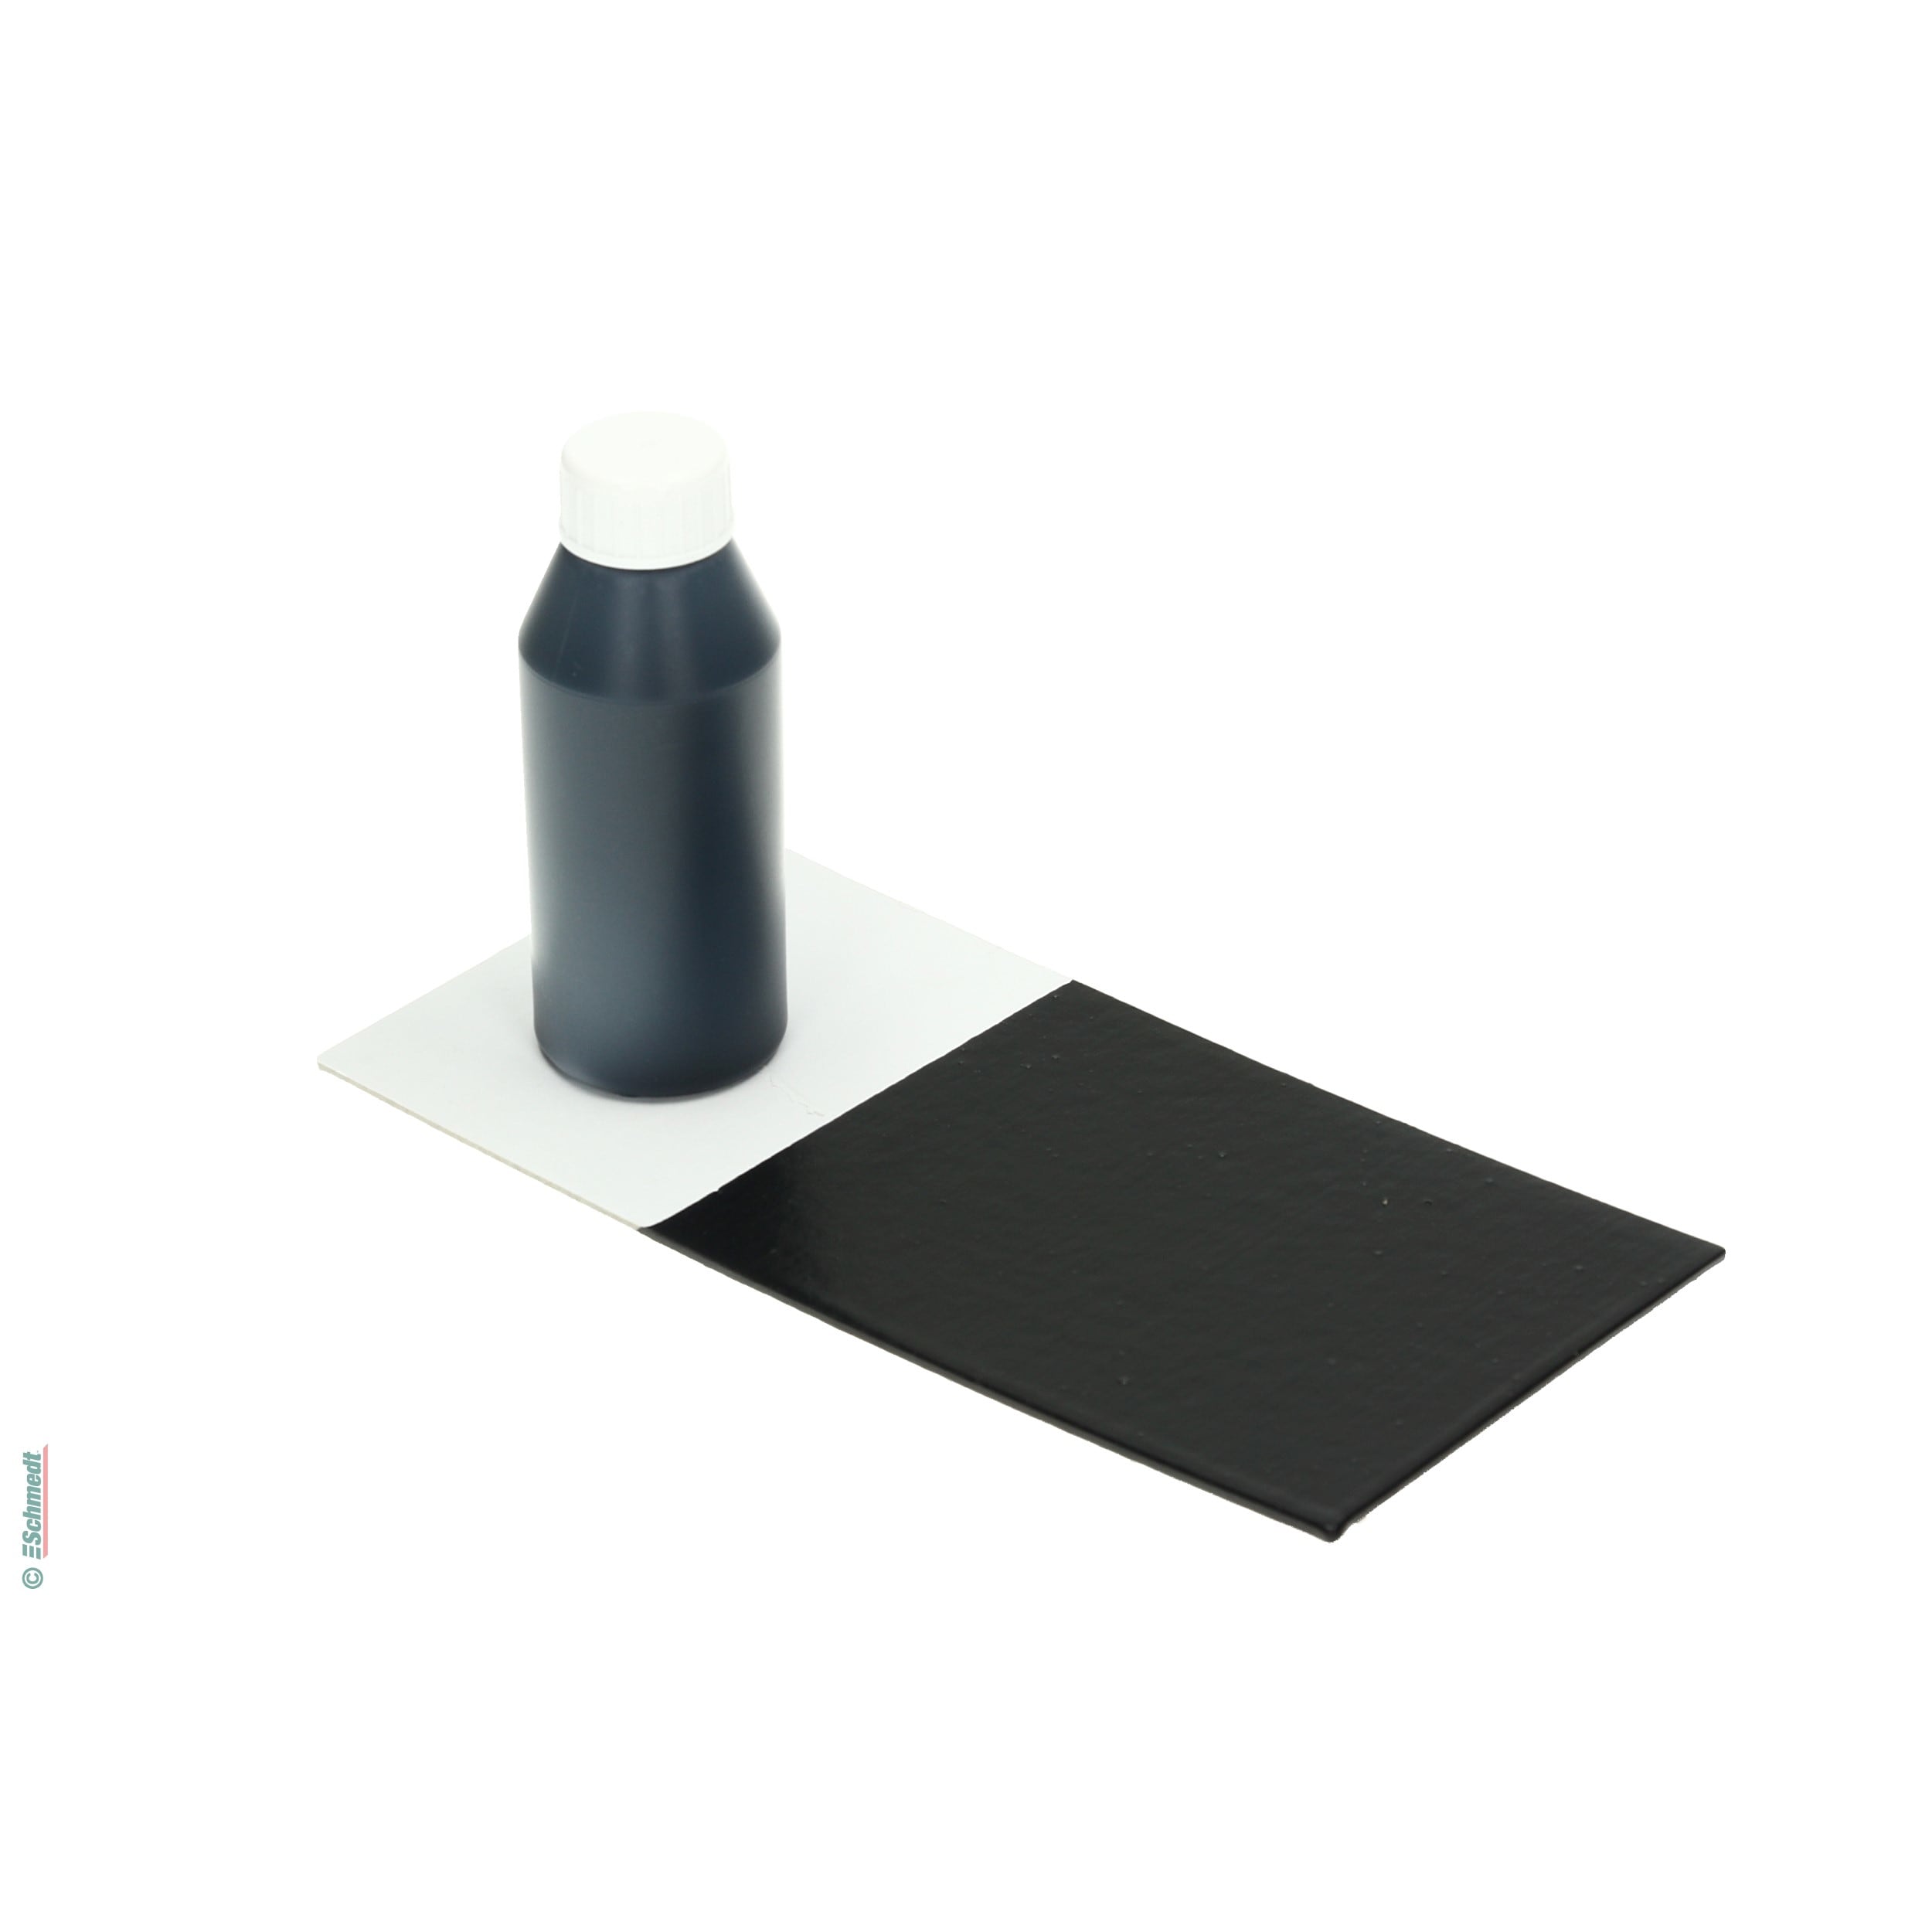 Pintura para cola - Color negro - Contenido Botella / 100 ml - para darle color a las colas de dispersión como, por ejemplo, cola para el bl... - imagen-1